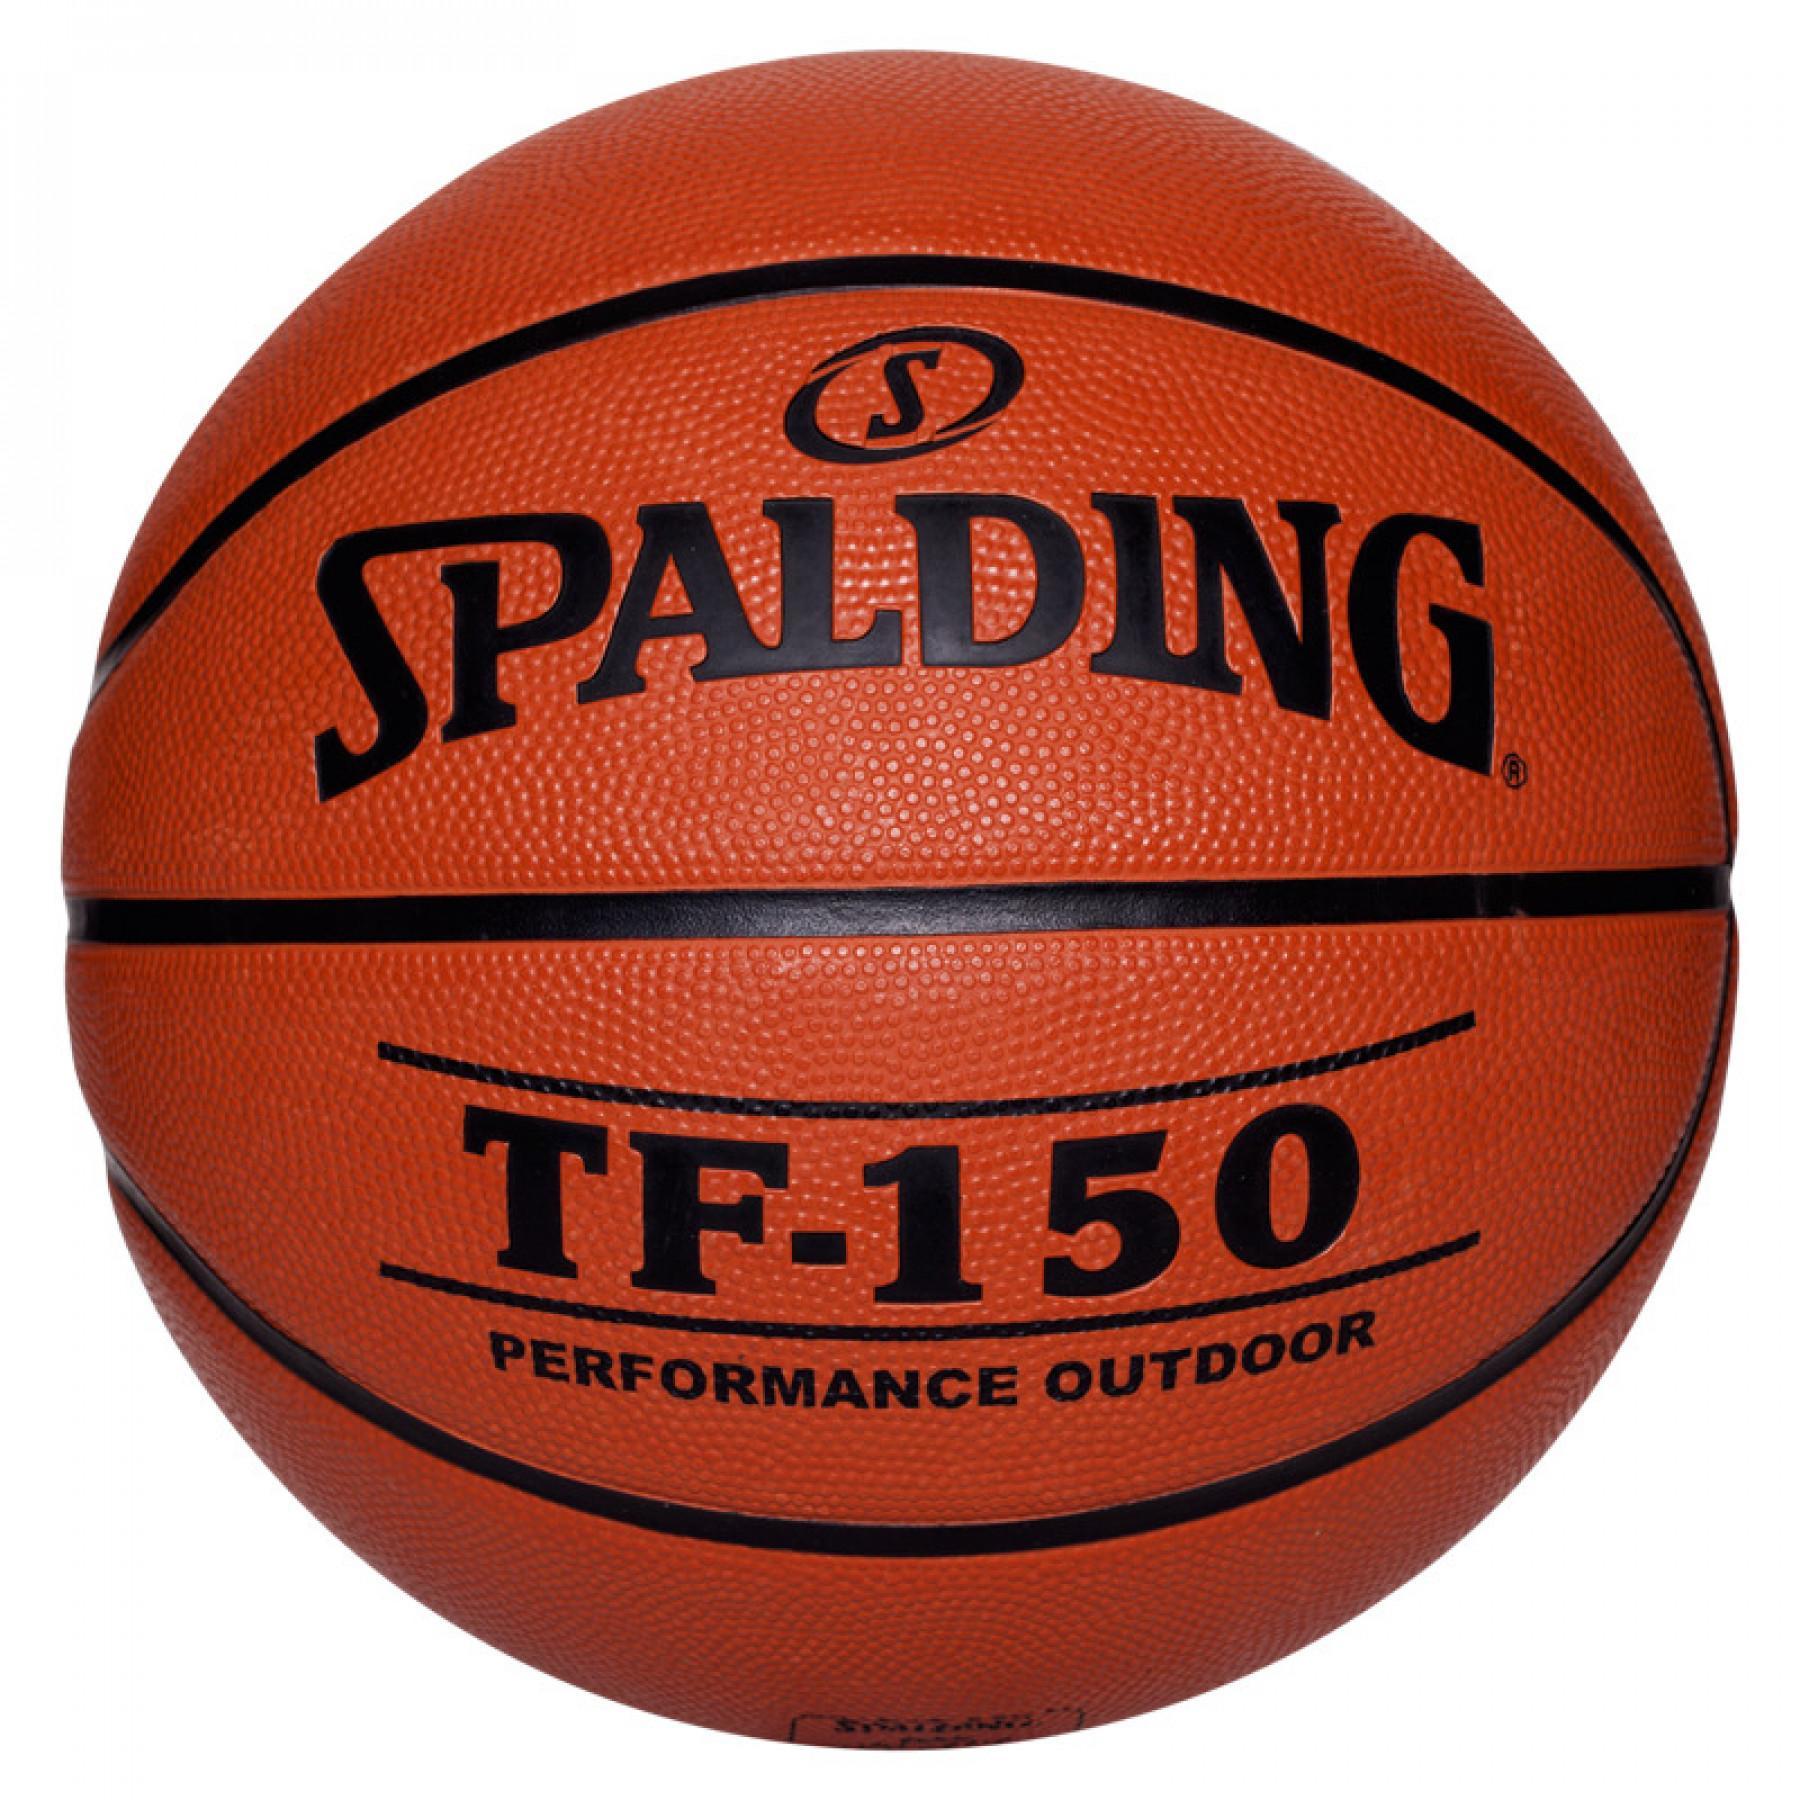 Balon Spalding Tf150 Outdoor (73-955z)